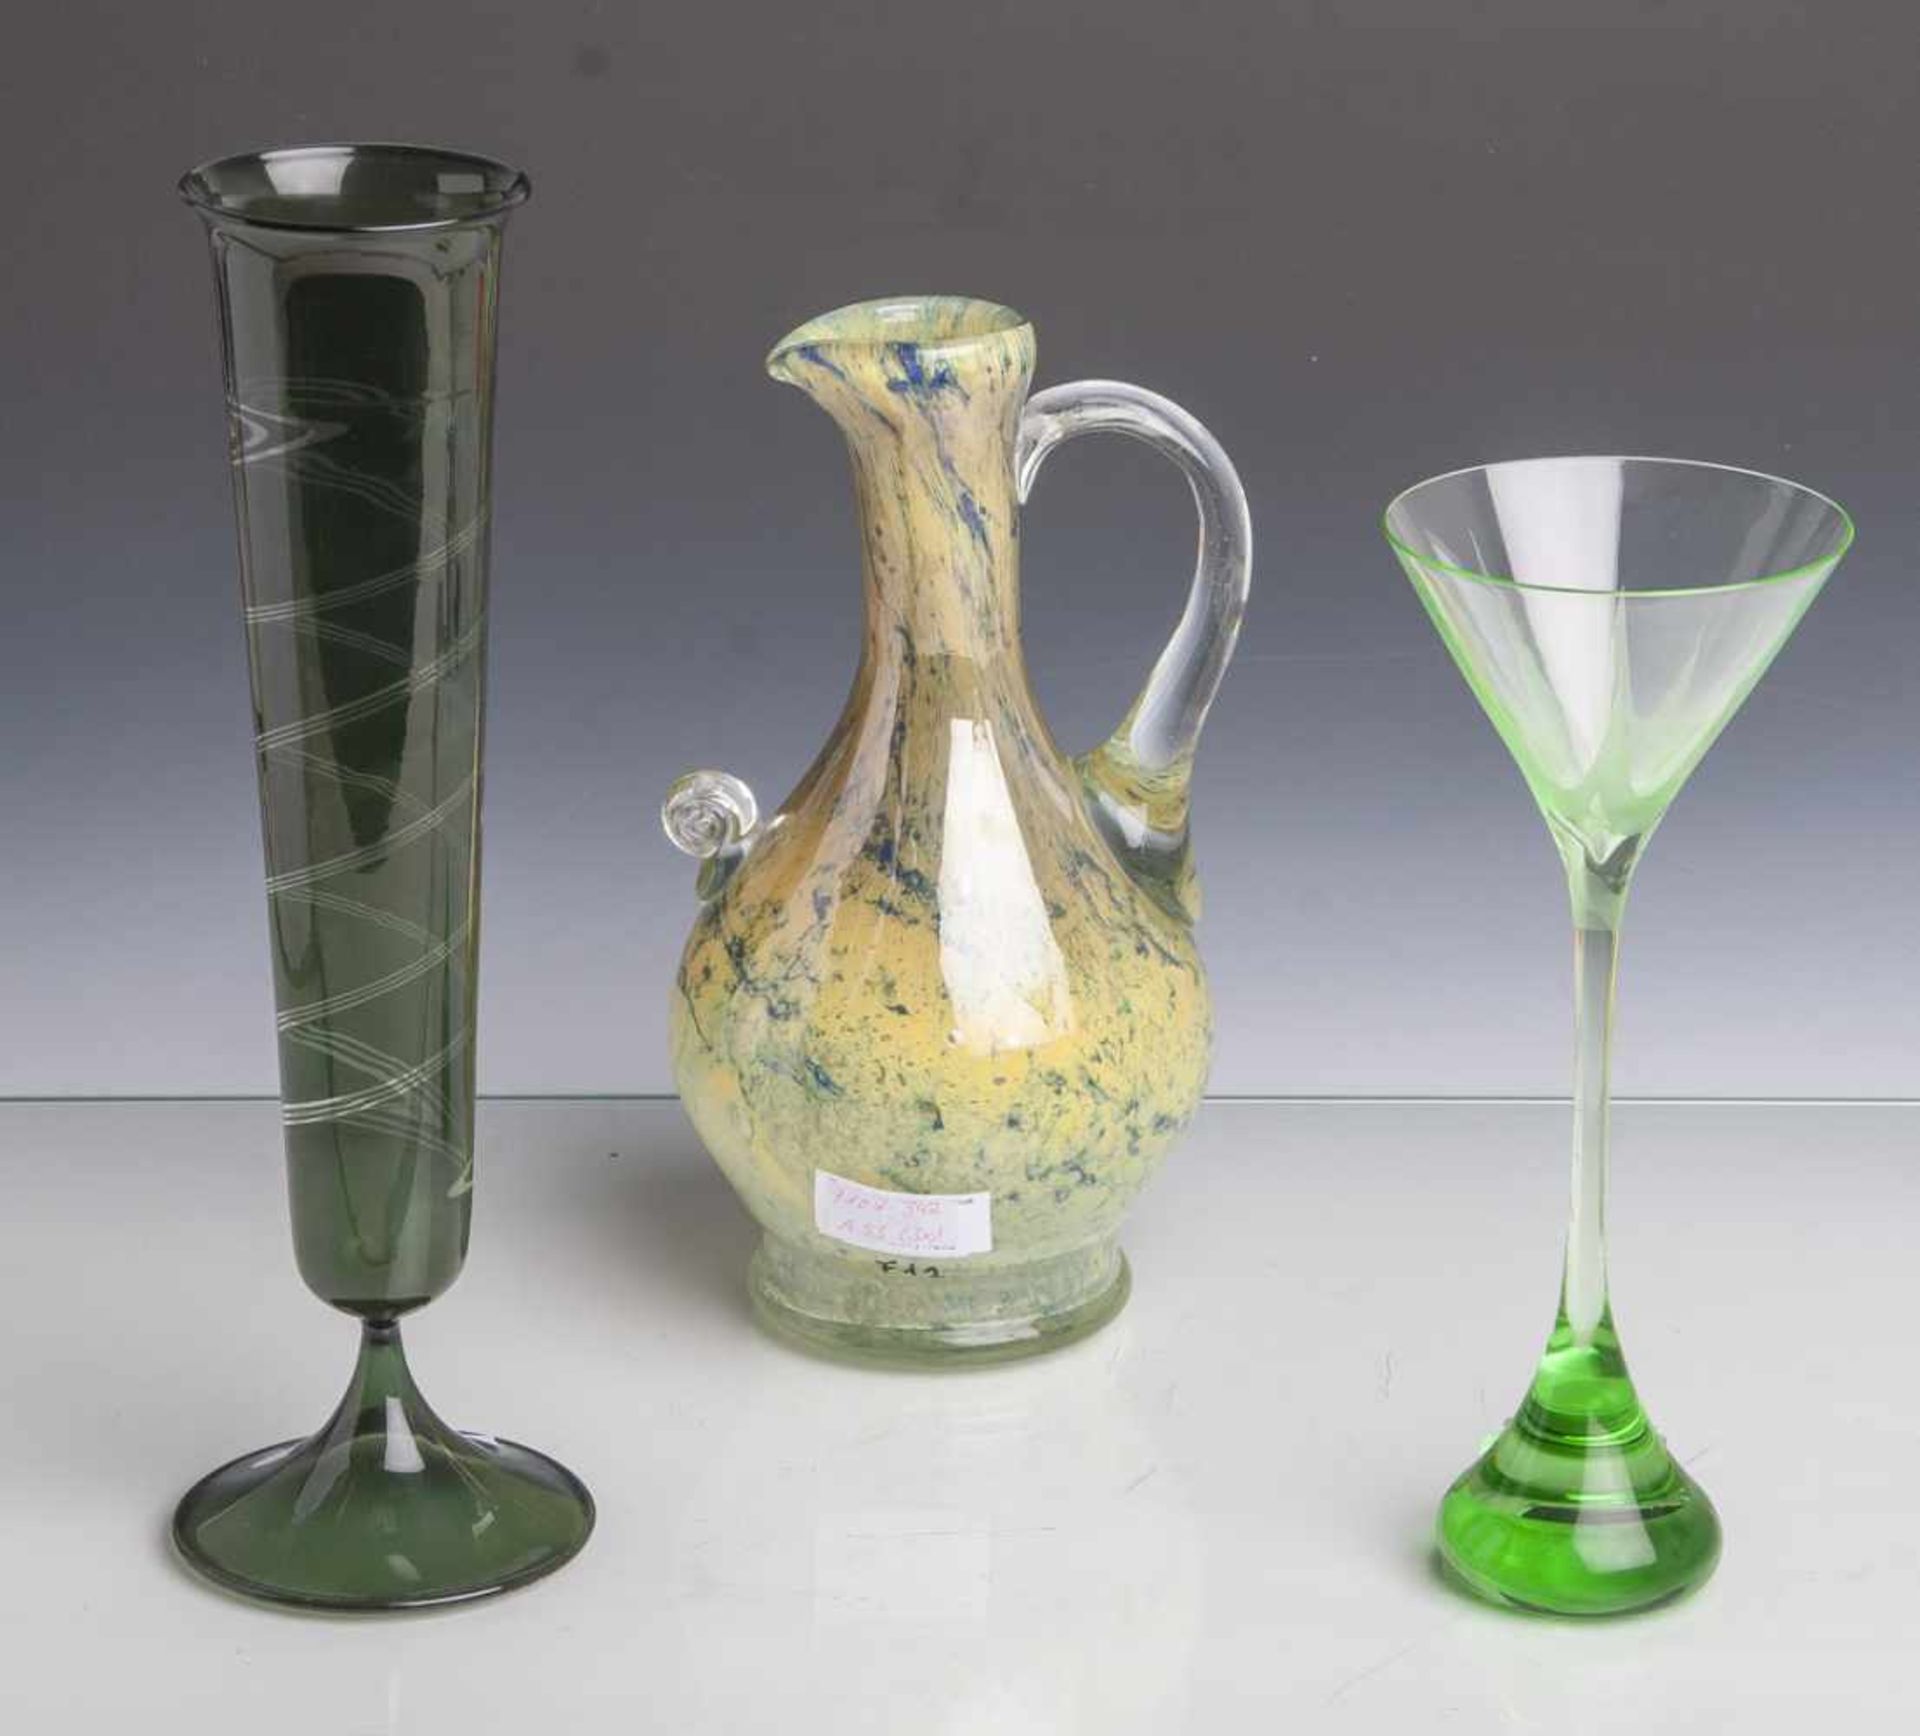 Konvolut von 2 Gläsern u. 1 Kanne: Pokal, Entwurf Heinz Kalb (geb. 1943), grünes Glas,